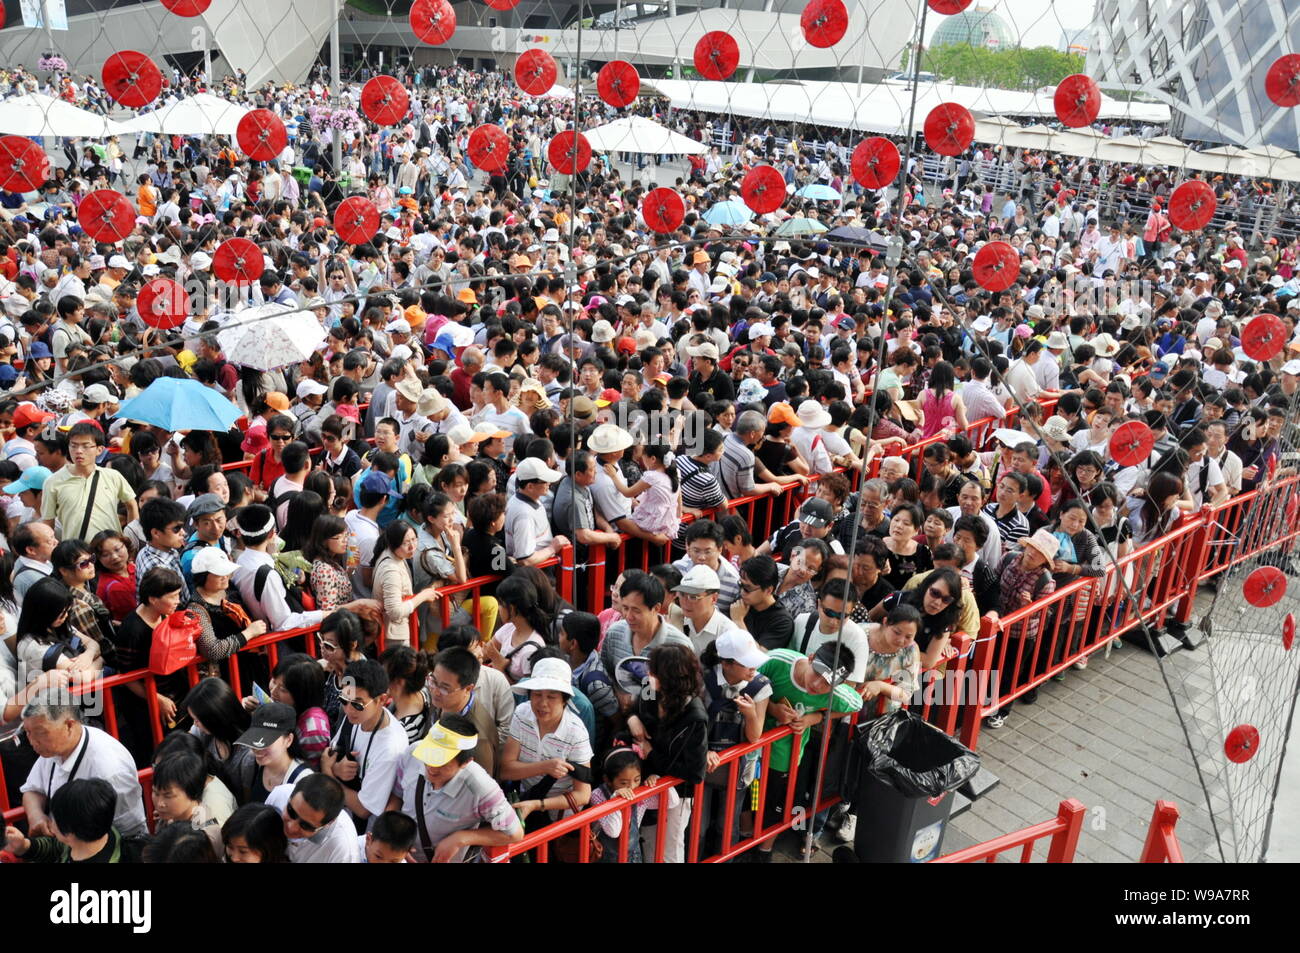 Massen der Besucher in die Warteschlange einreihen, die Schweiz in der Welt Pavillon Expo Park in Shanghai, China, 3. Juni 2010 ein. Mehr als 10 Millionen Menschen ha Stockfoto